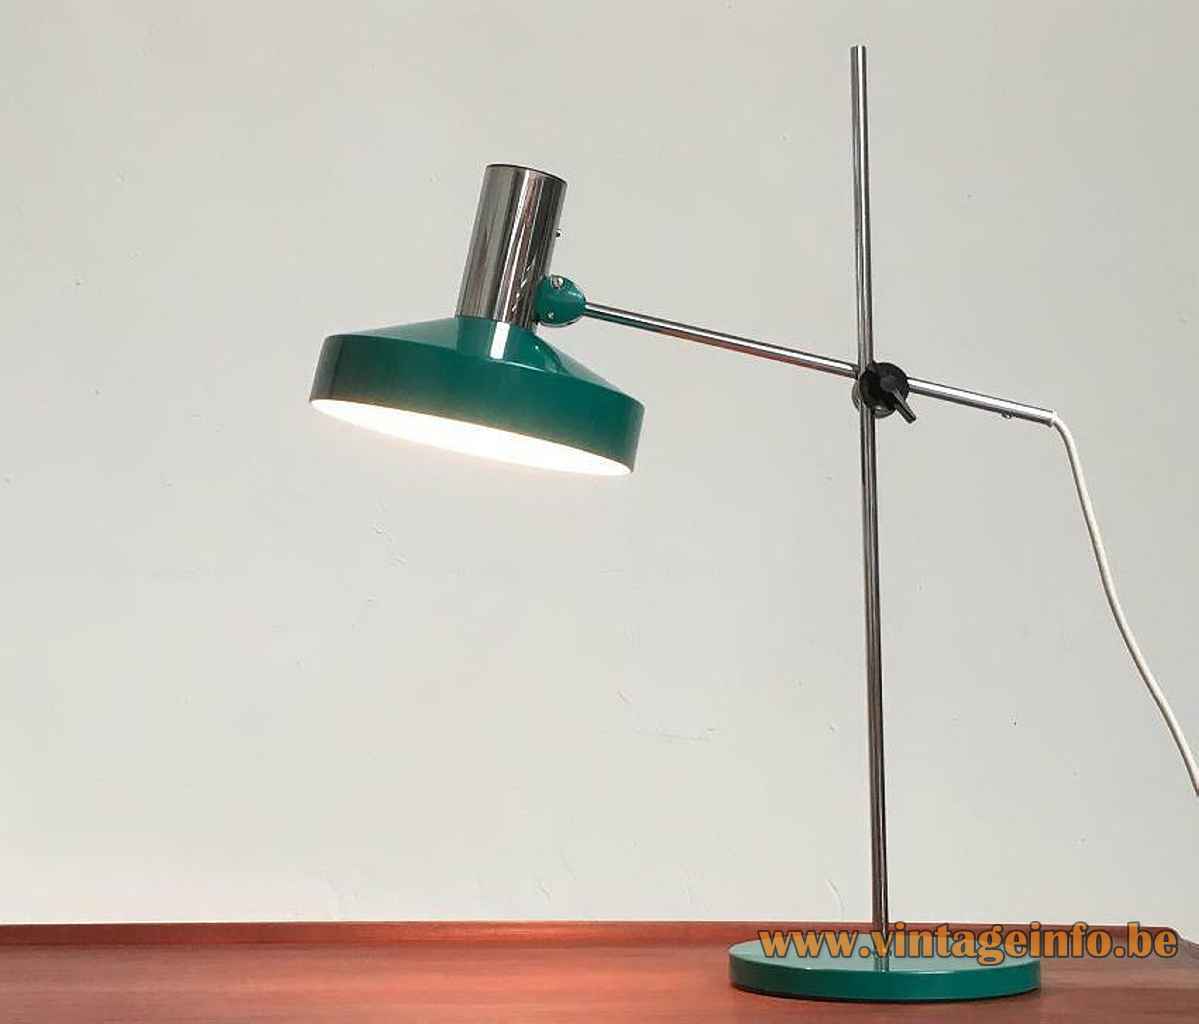 Kaiser Leuchten desk lamp 6857 round green base & adjustable lampshade chrome rods 1960s 1970s Germany